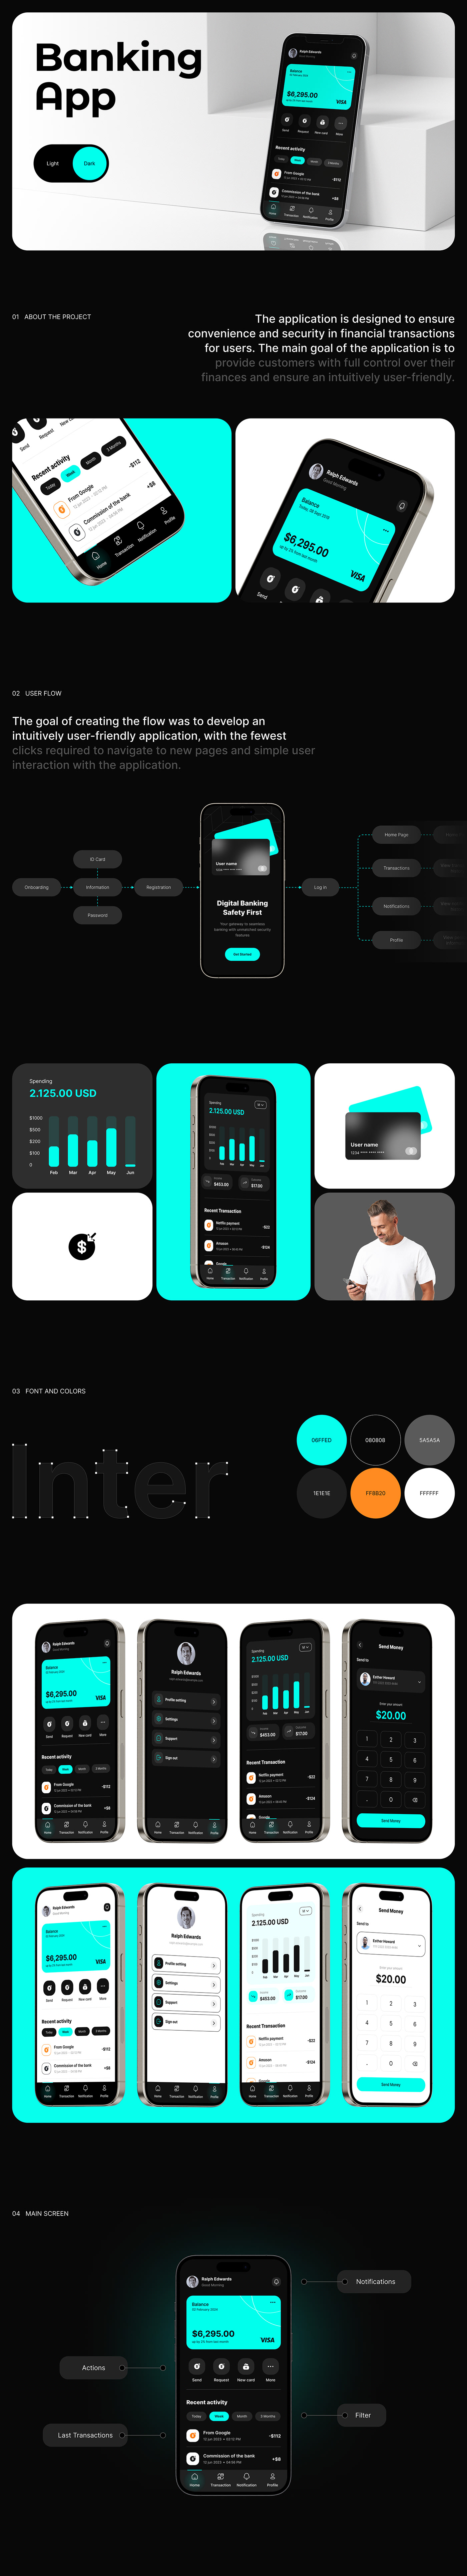 UI/UX Web Design  Mobile app mobile design Mobile Application trend trendy design inspiration finance banking app